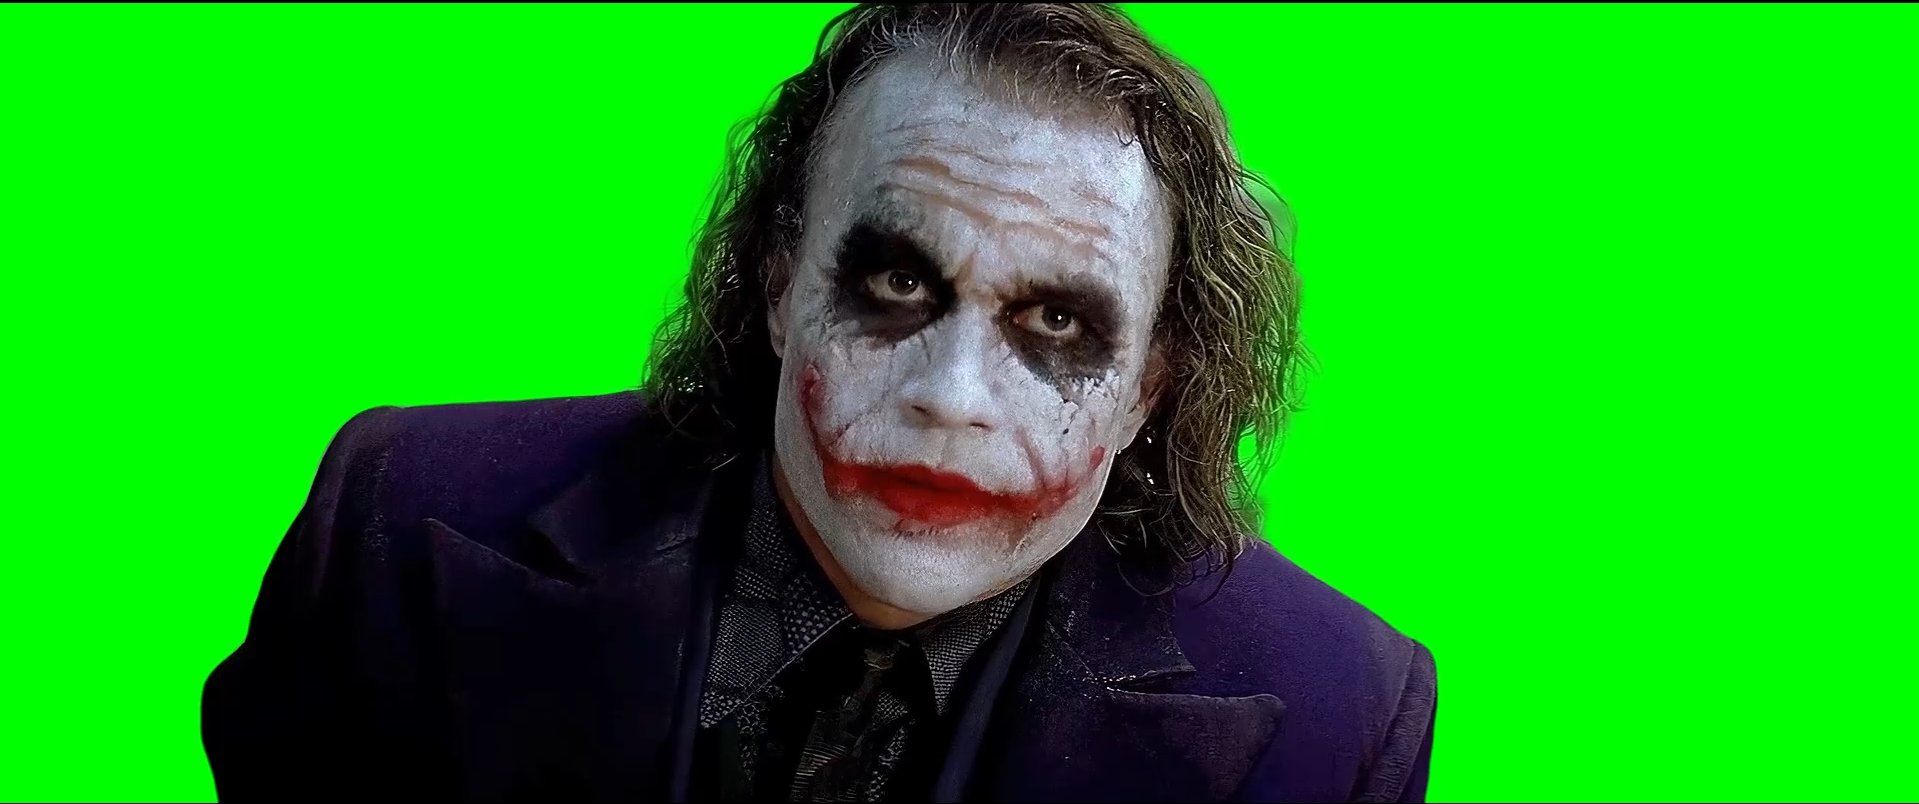 Joker saying 